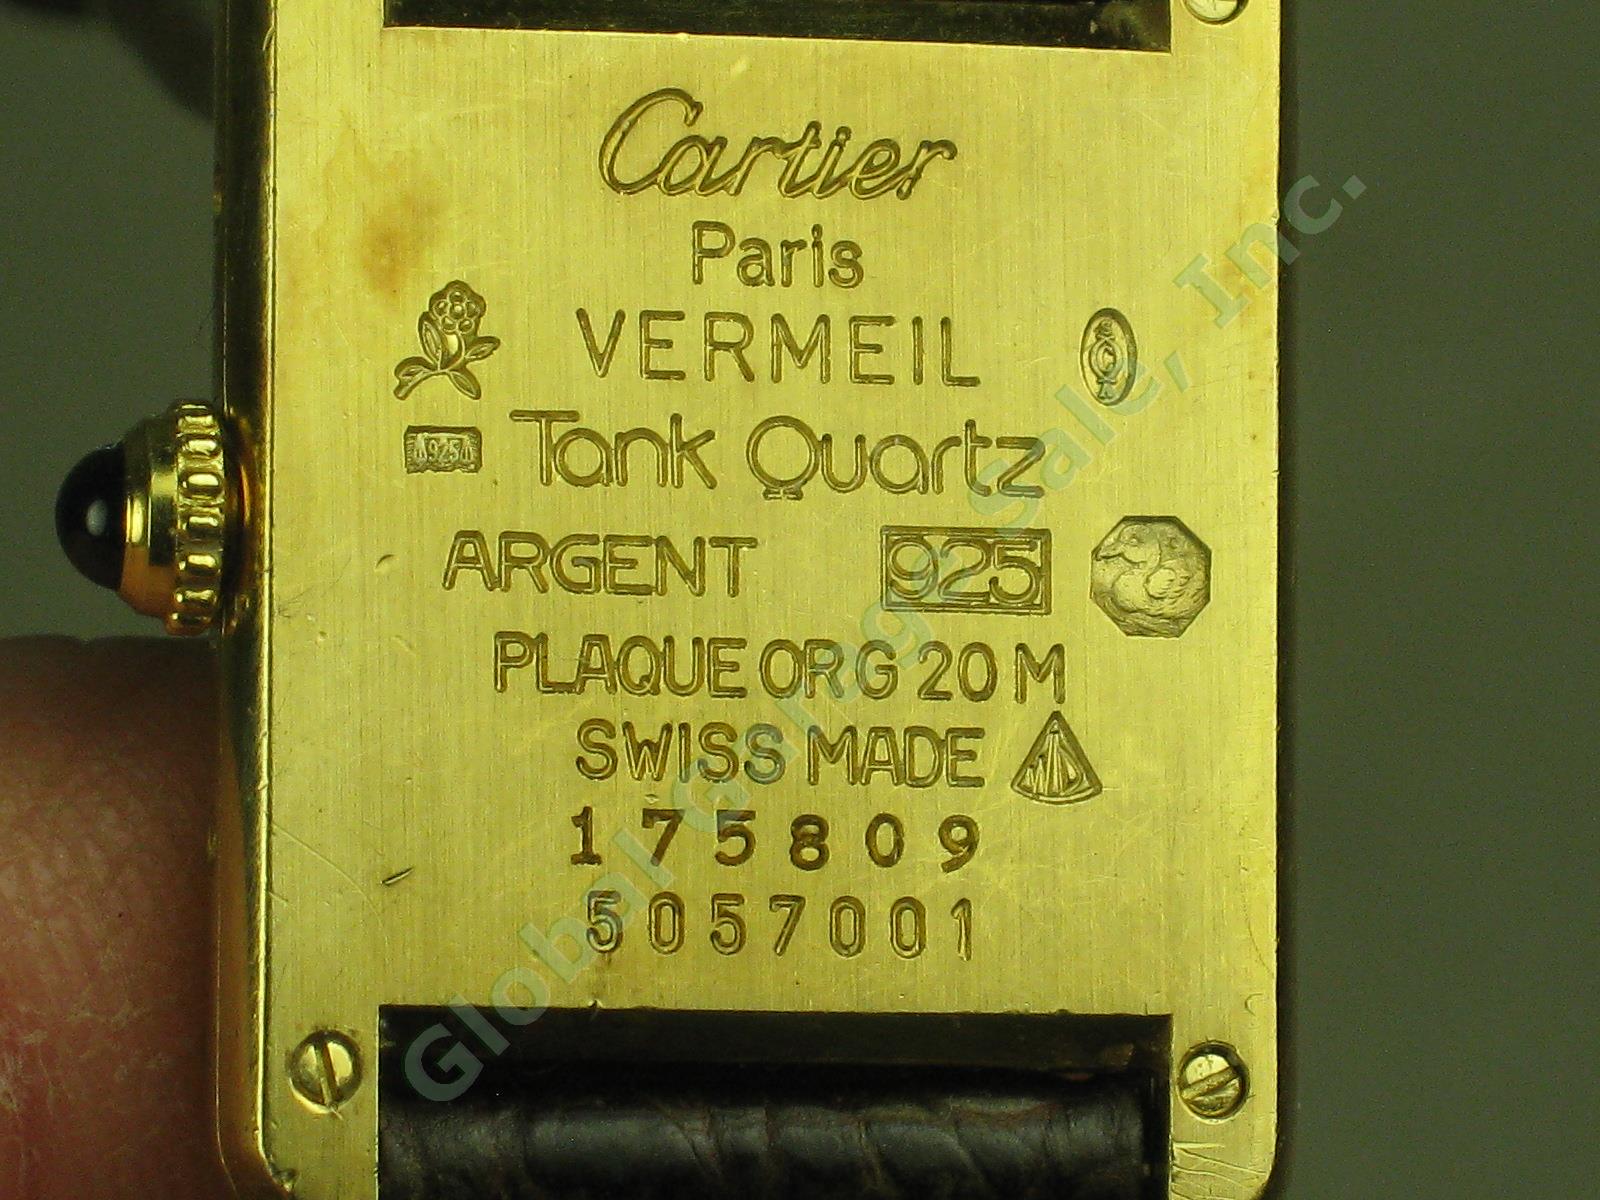 Must De Cartier Paris Vermeil Tank Quartz Argent 925 Plaque OR G 20M Swiss Watch 3